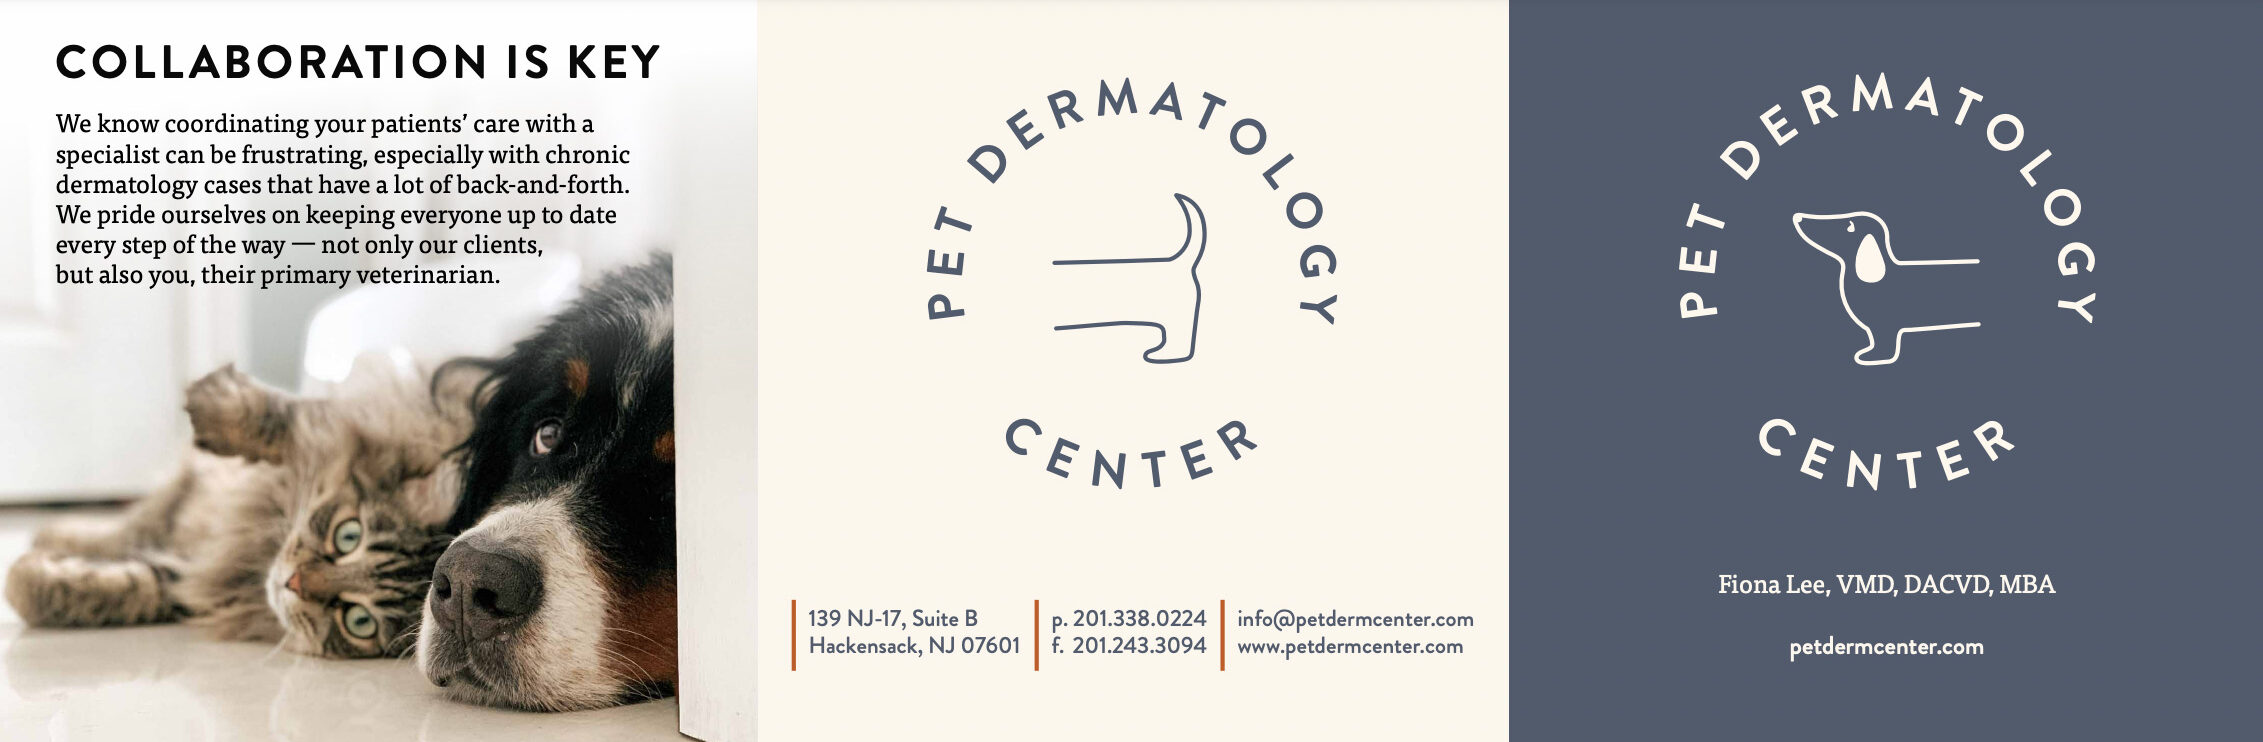 Pet Dermatology Center logos